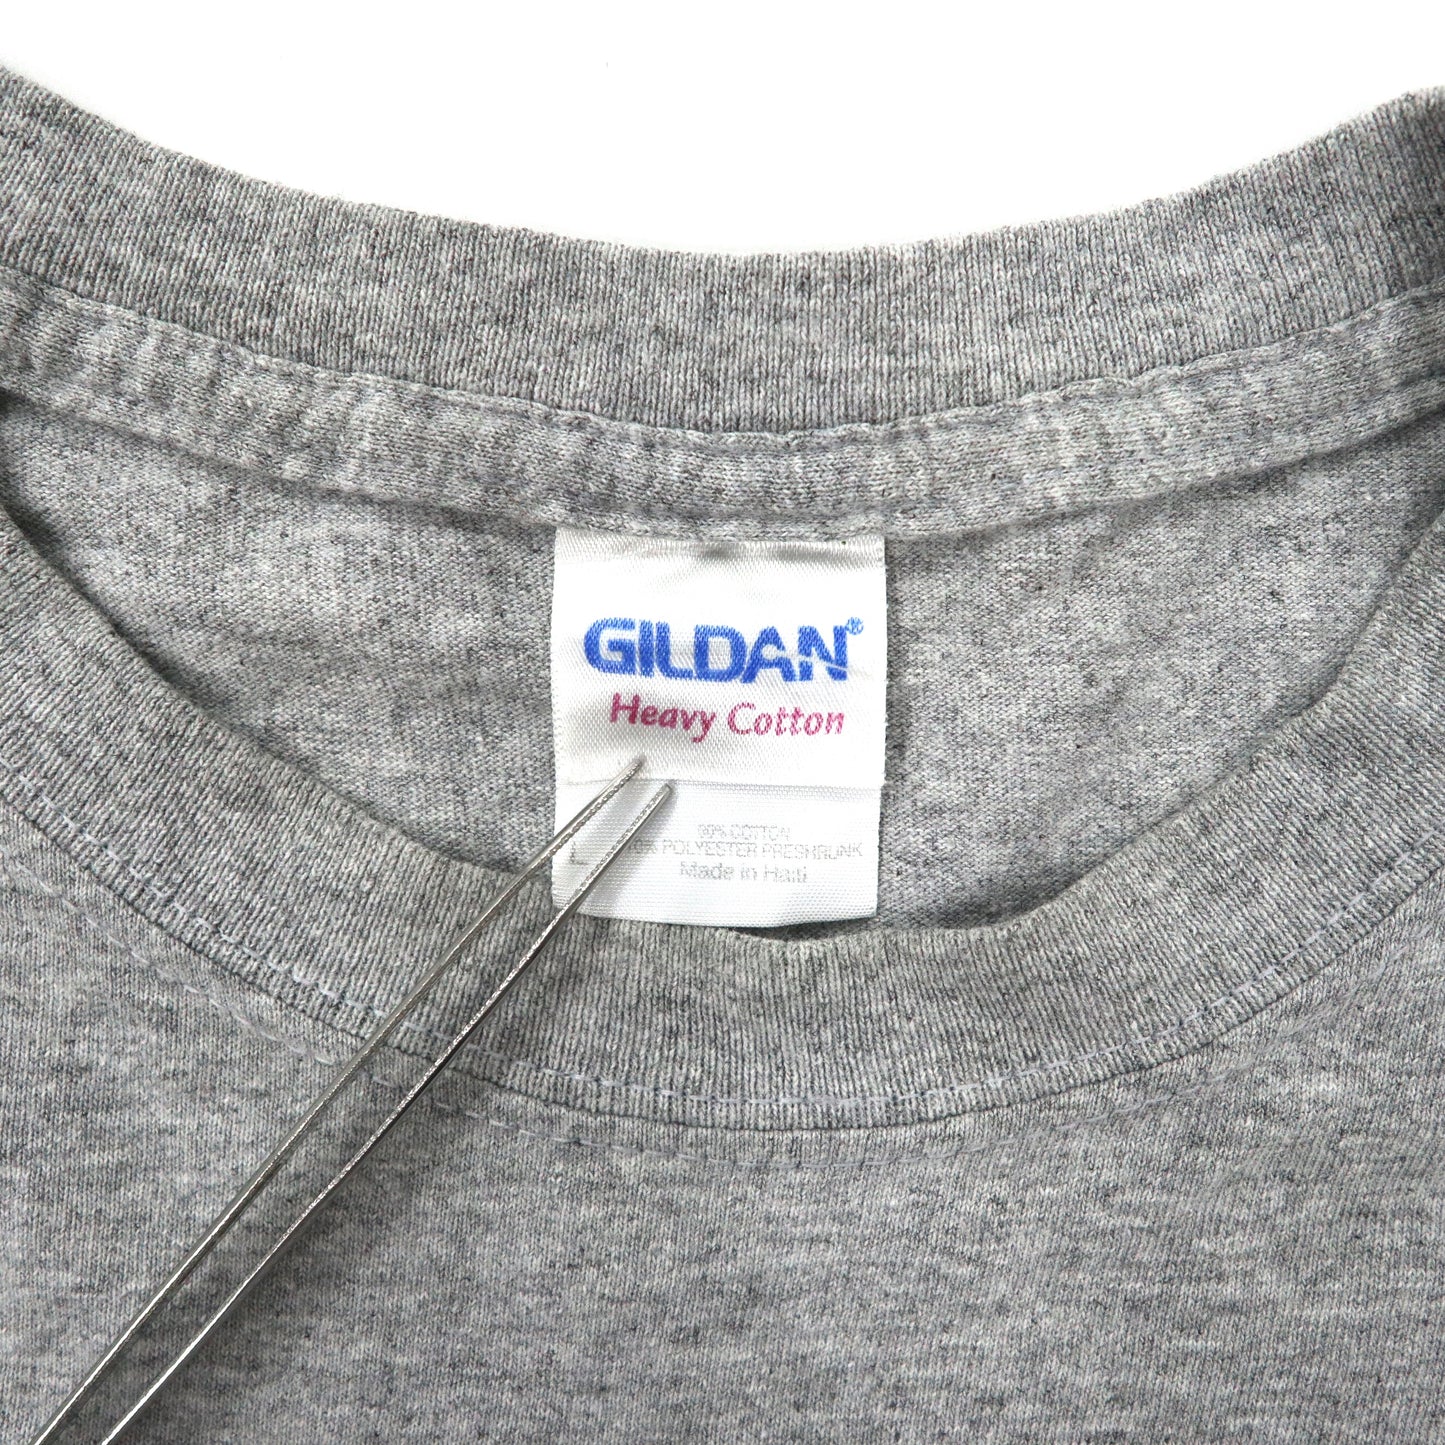 GILDAN ビッグサイズ Tシャツ L グレー コットン ペプシコーラ 両面プリント ハイチ製